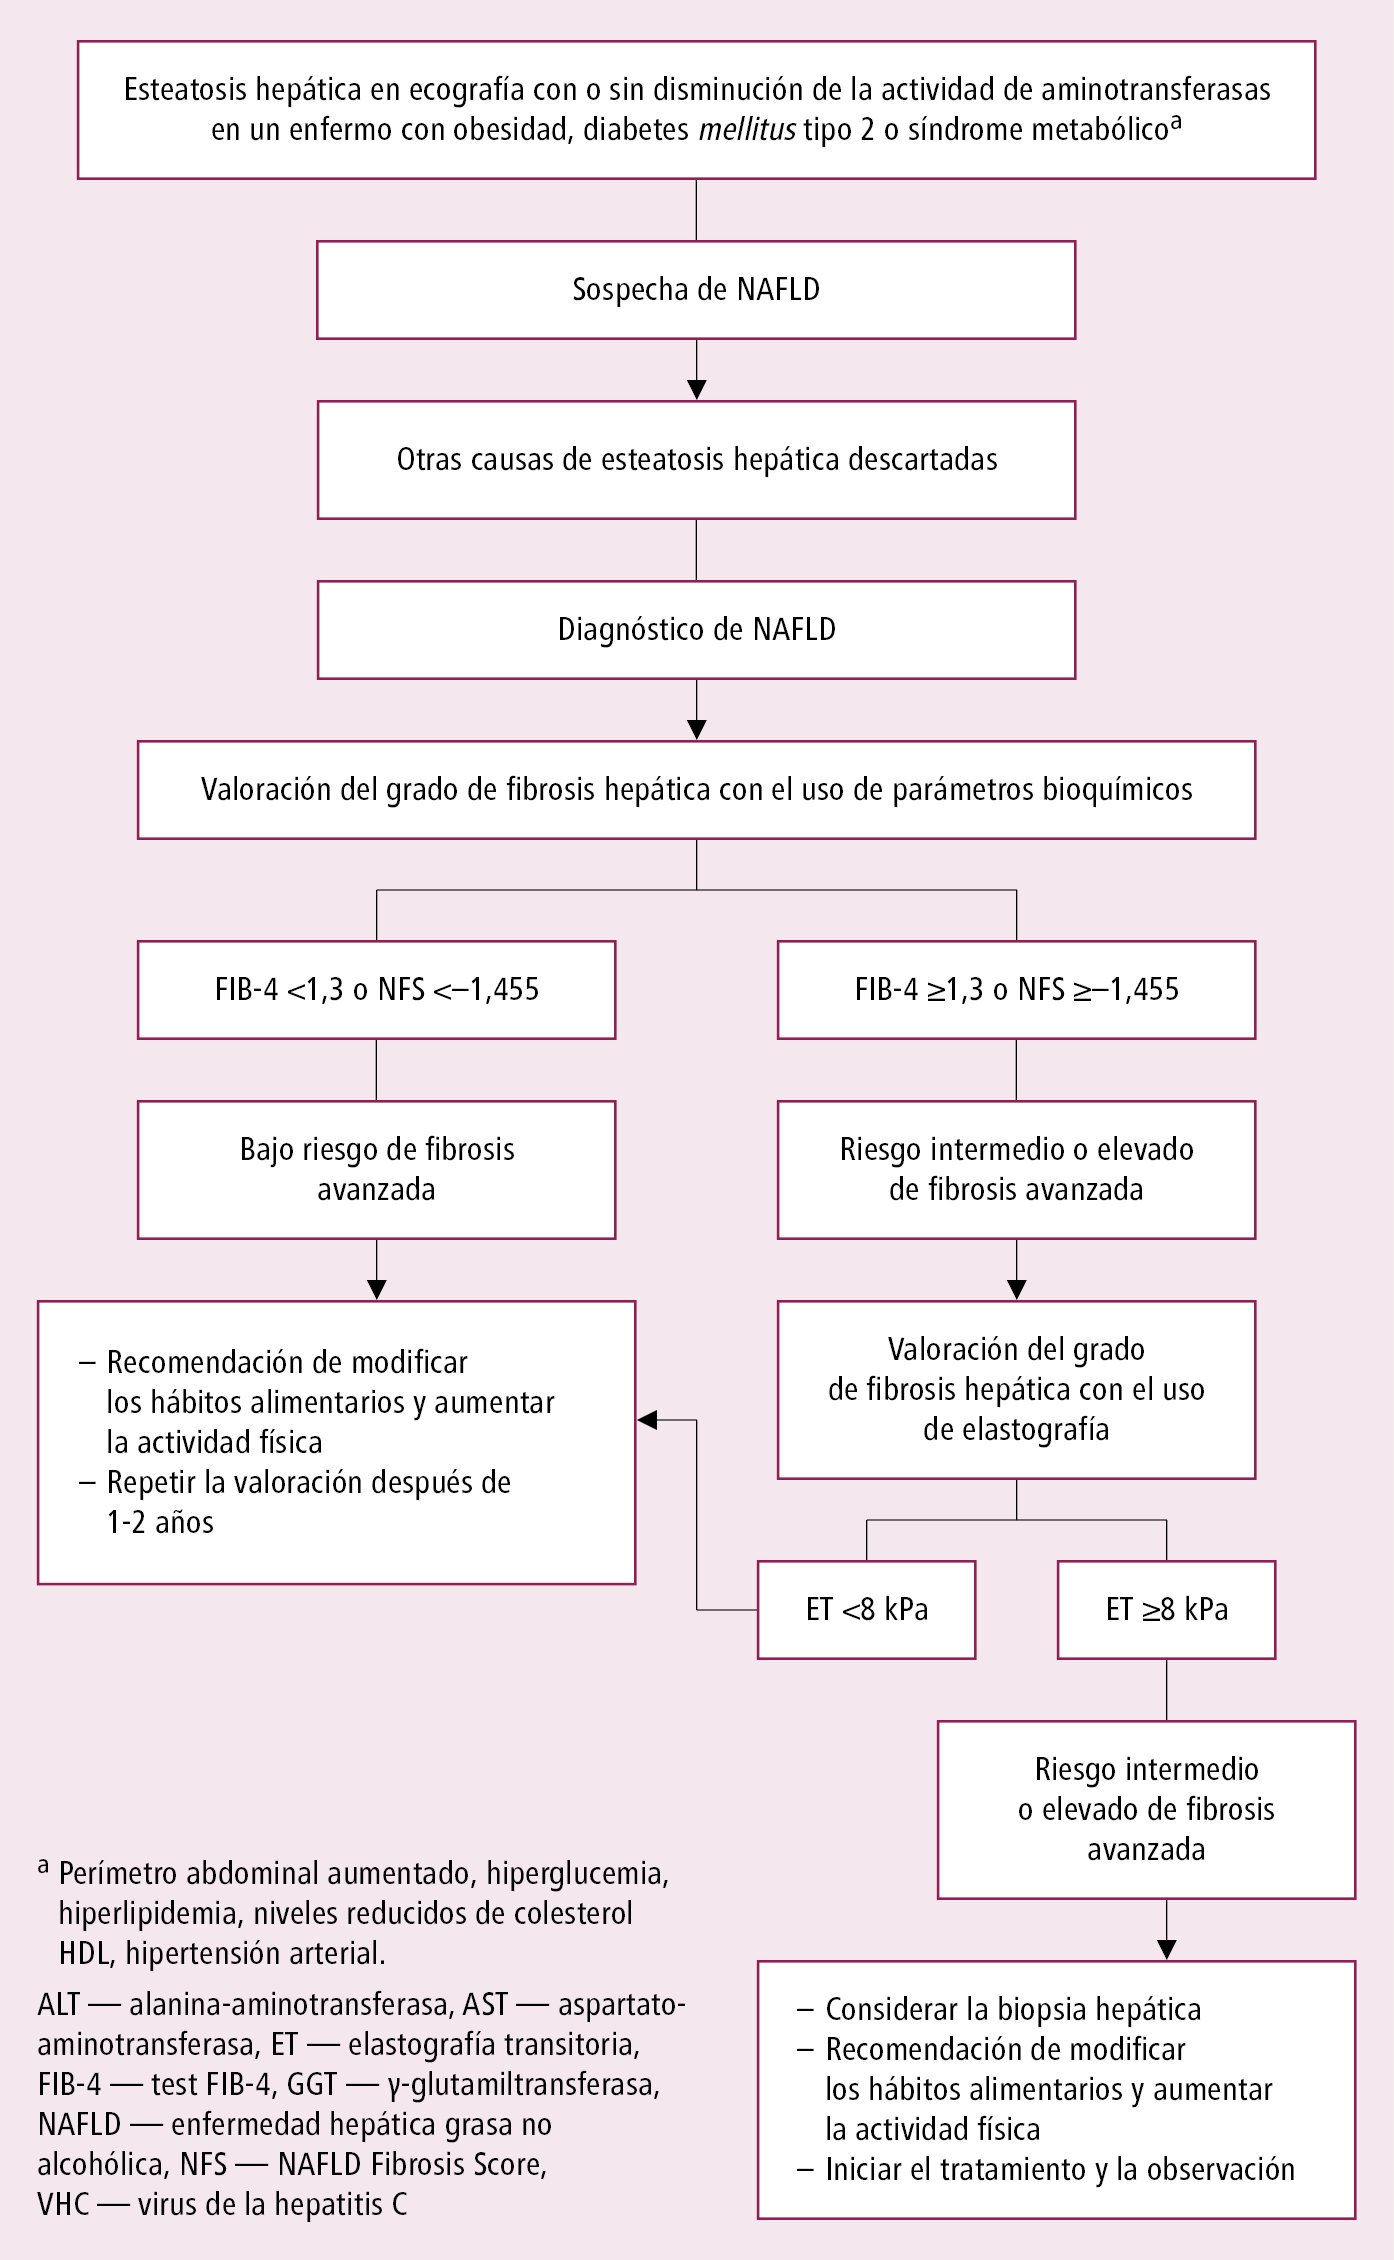    Fig. 7.11-1.  Estrategia de diagnosticar y tratar la NAFLD 